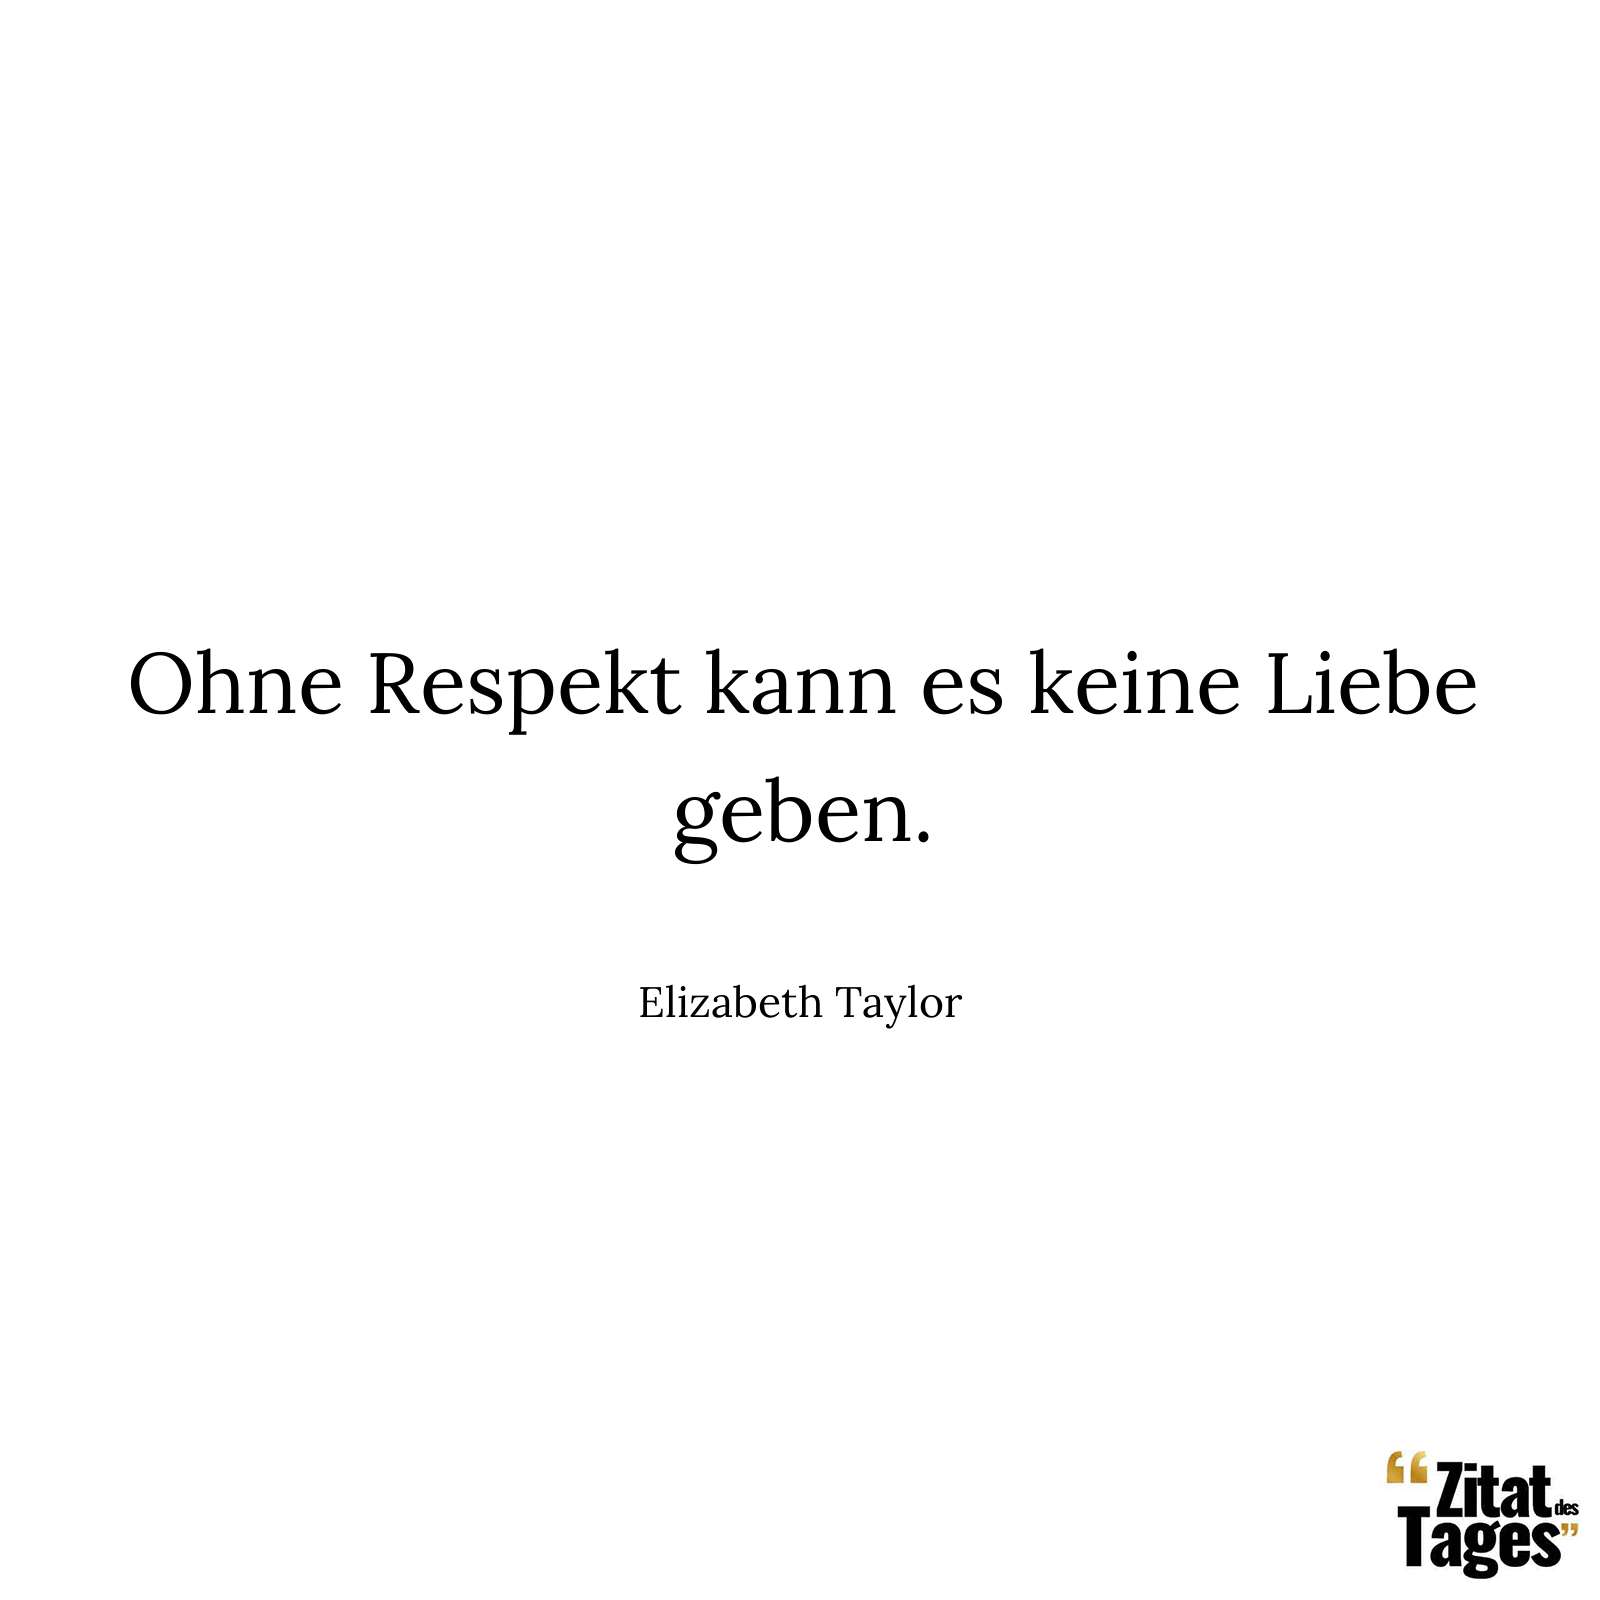 Ohne Respekt kann es keine Liebe geben. - Elizabeth Taylor